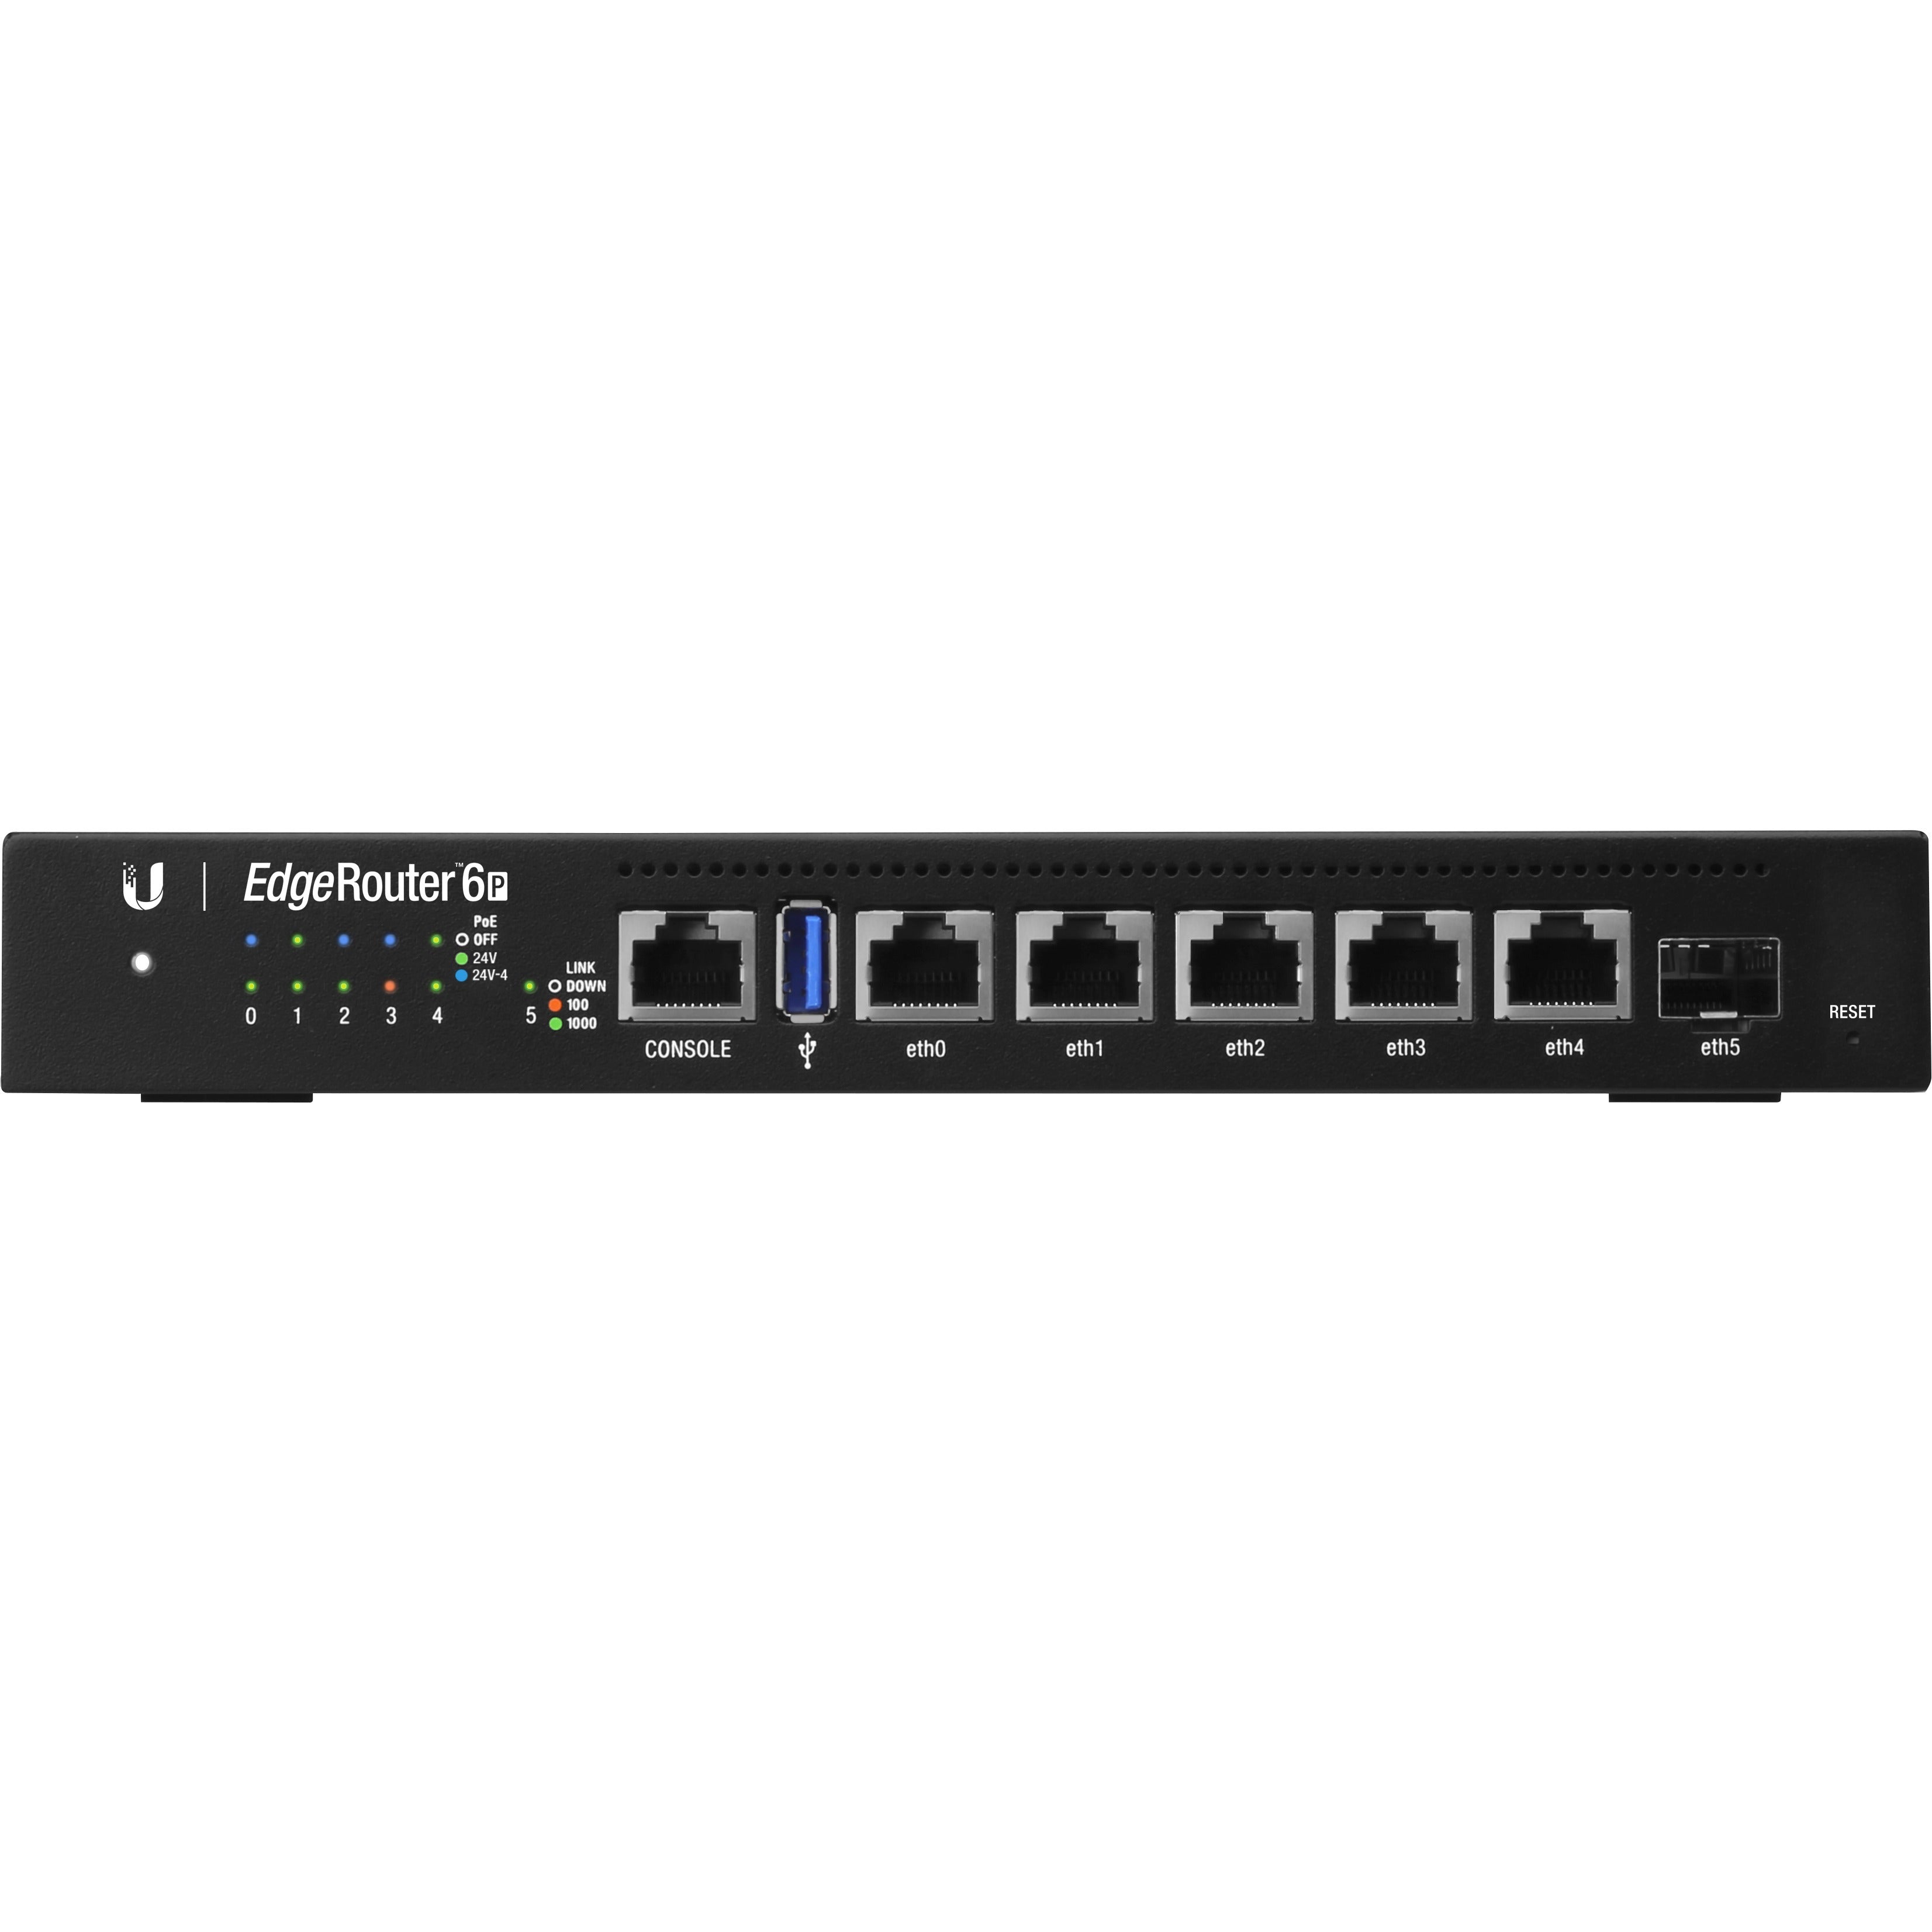 Ubiquiti Gigabit Routers With SFP